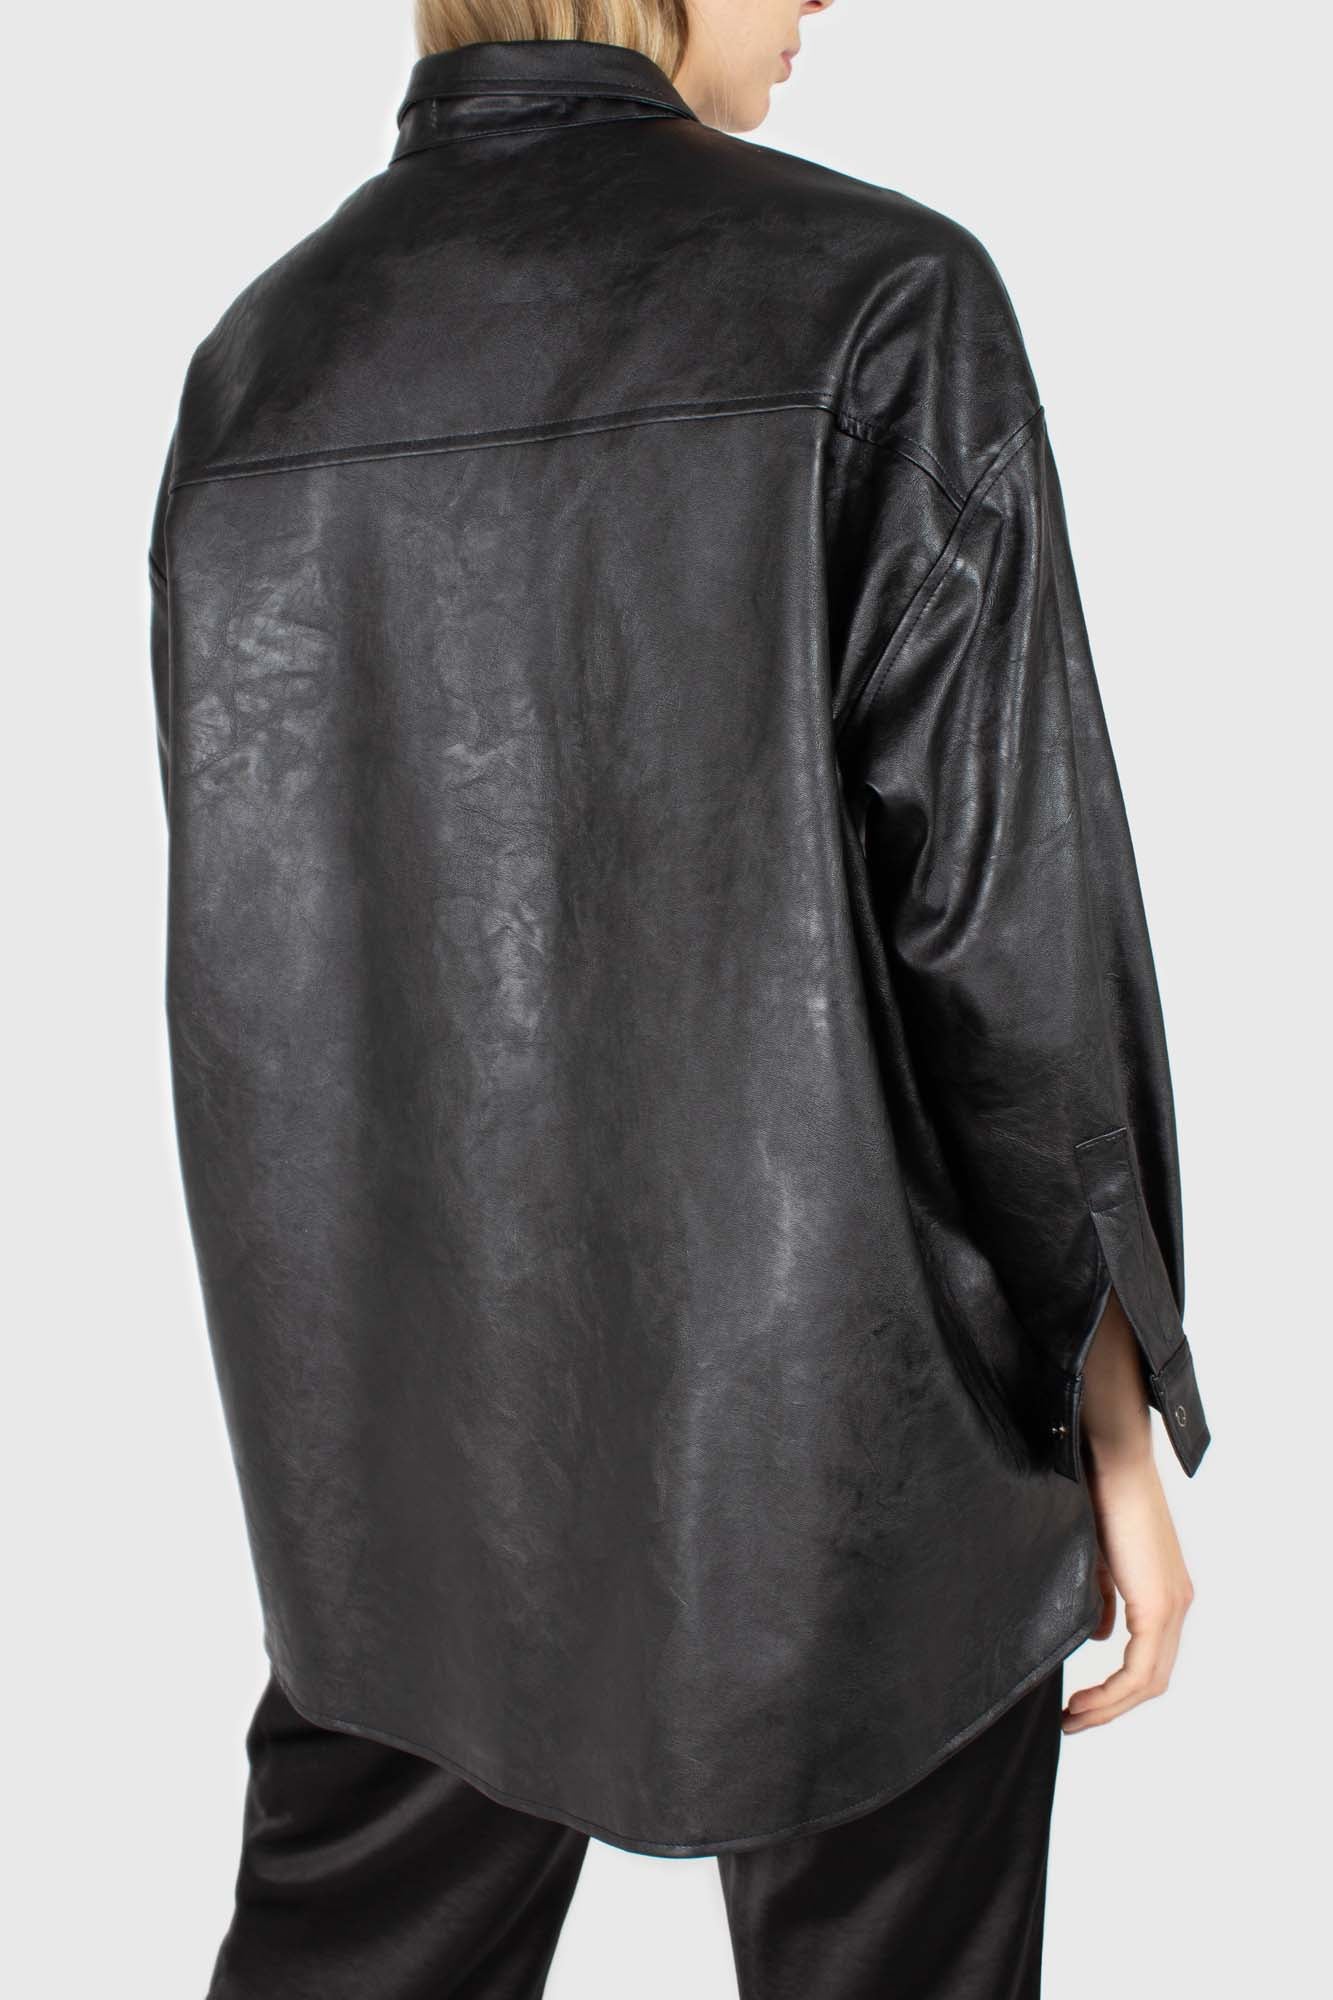 Black vegan leather belted shirt jacket